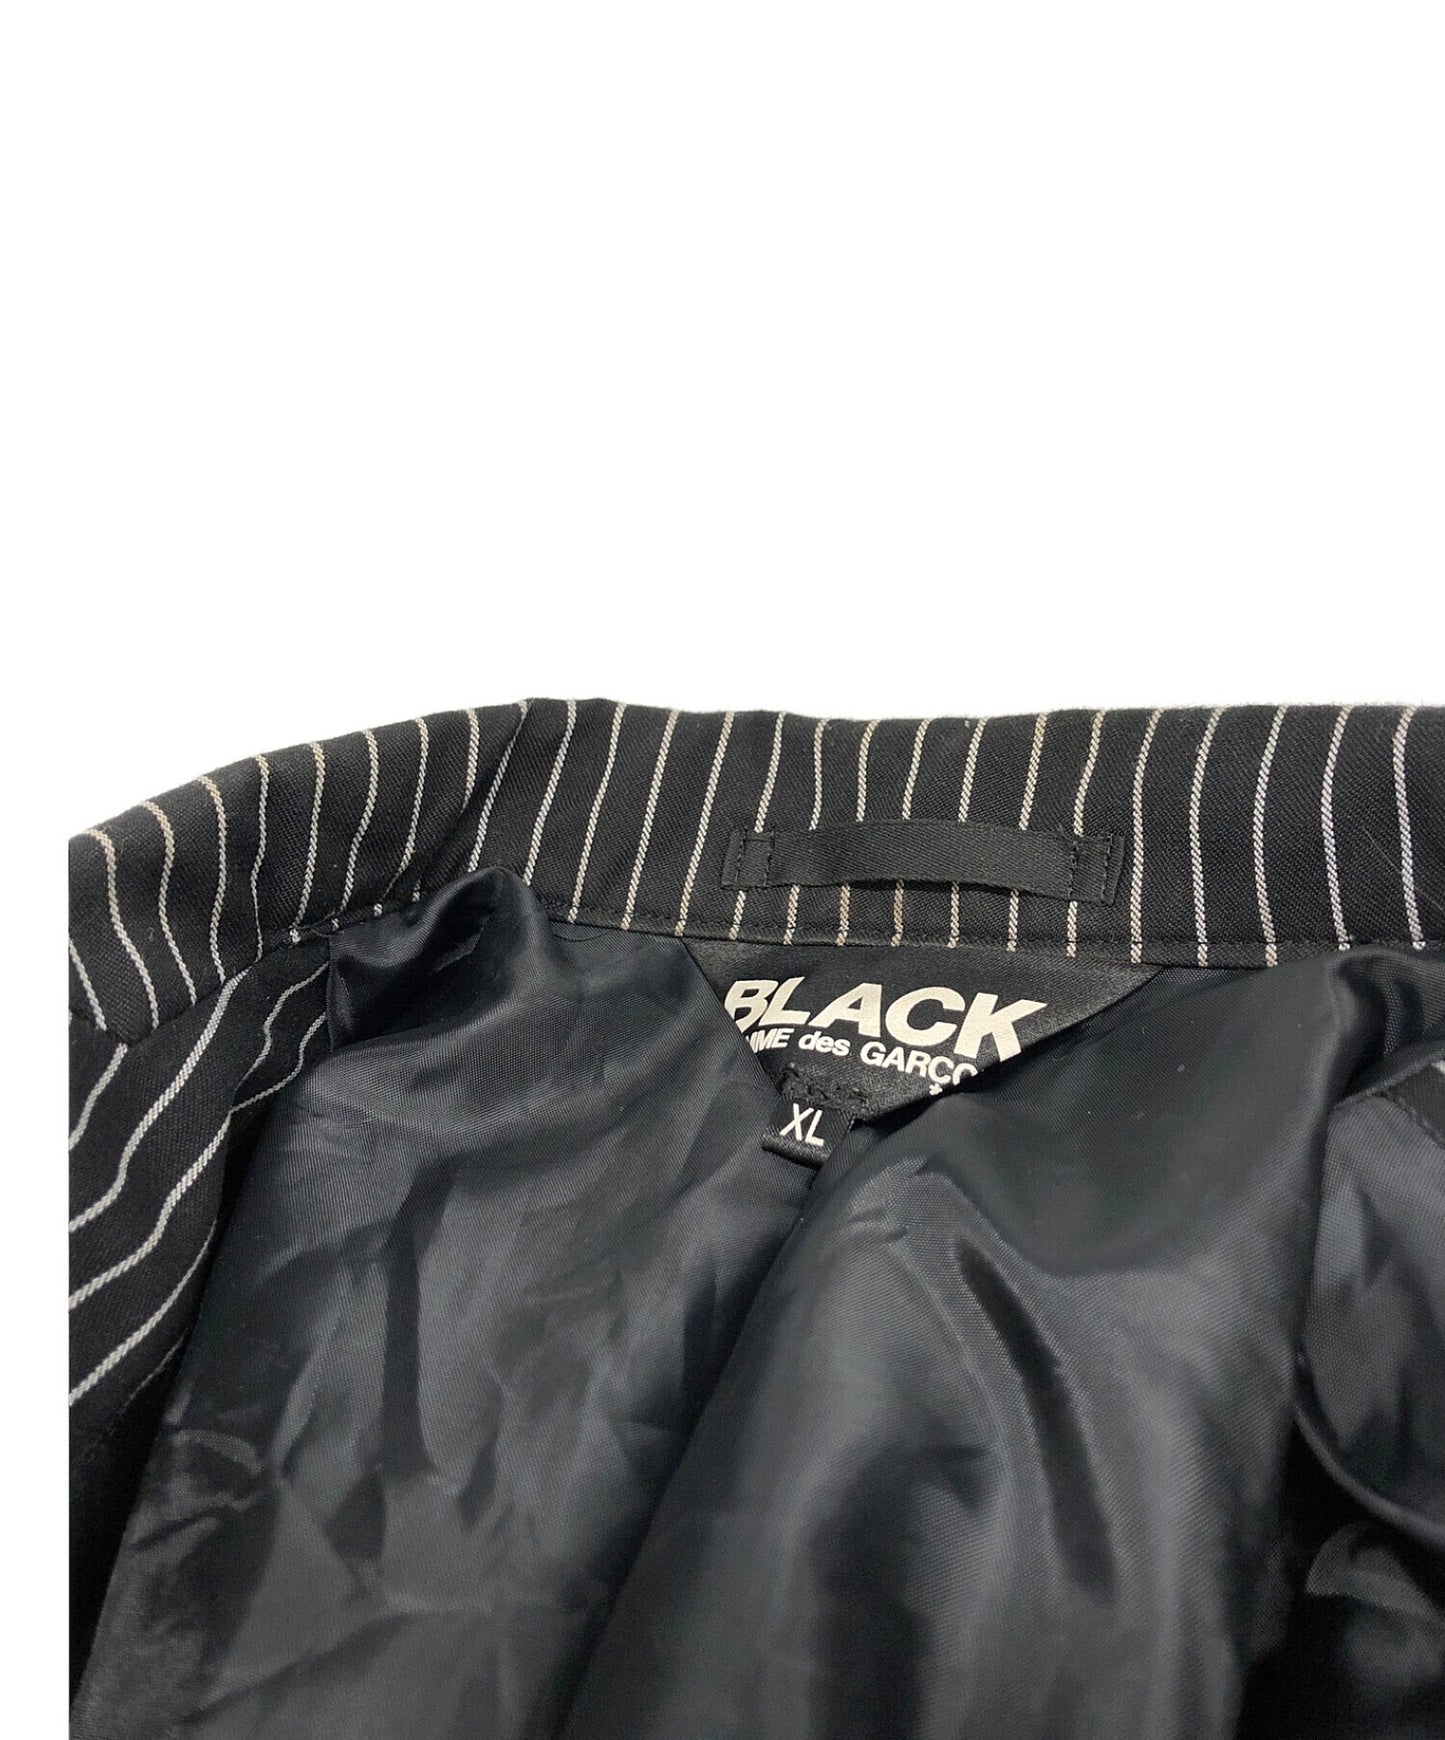 Black Comme des Garcons 스트라이프 3B 재킷 1E-J040